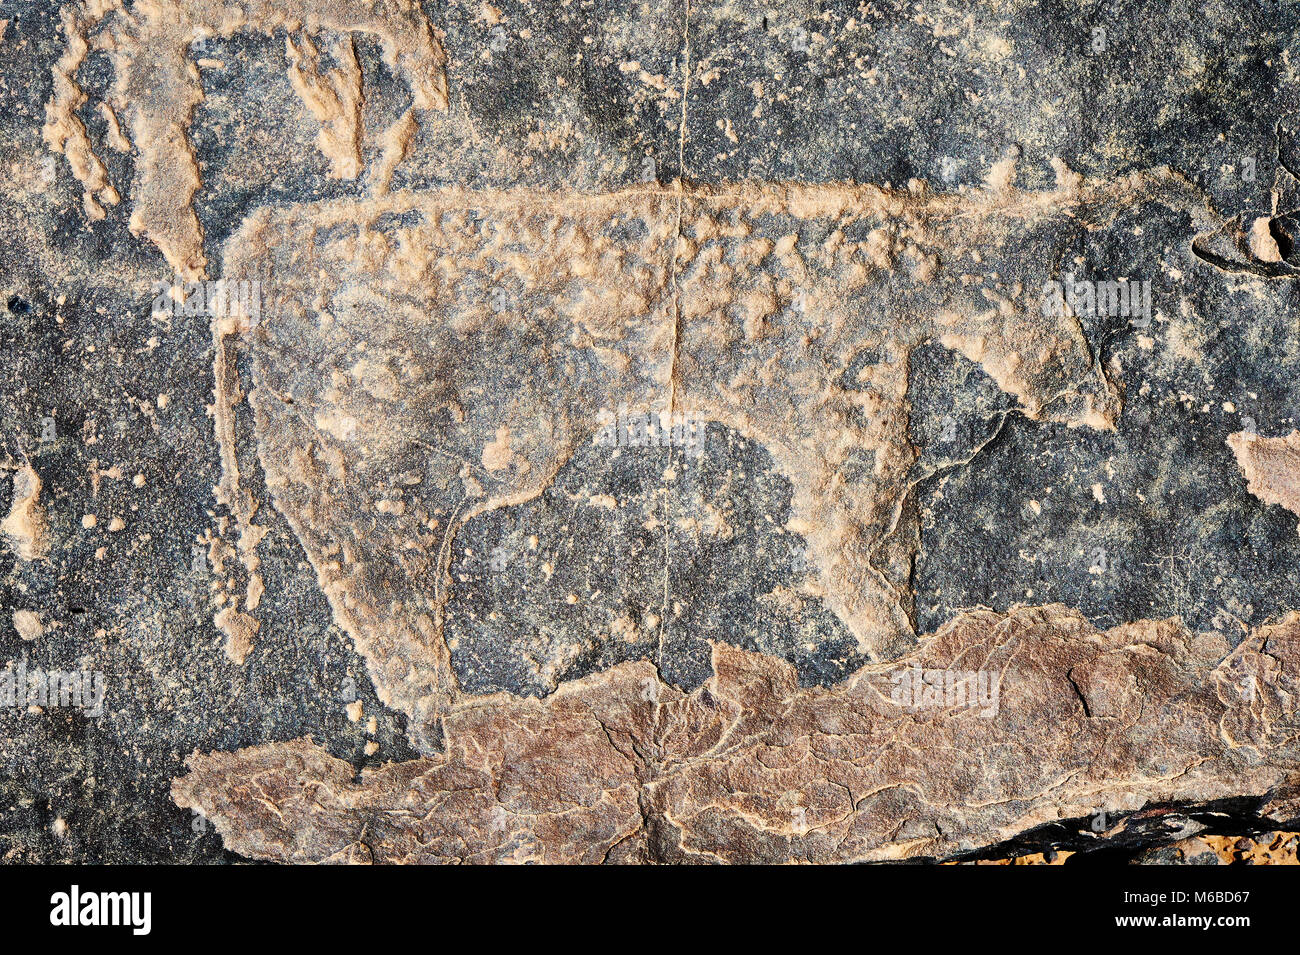 Prähistorische Sahara Petroglyph Kunst Felszeichnungen von Rindern von einer Site 20km östlich von Taouz, Süd-Ost-Marokko Stockfoto